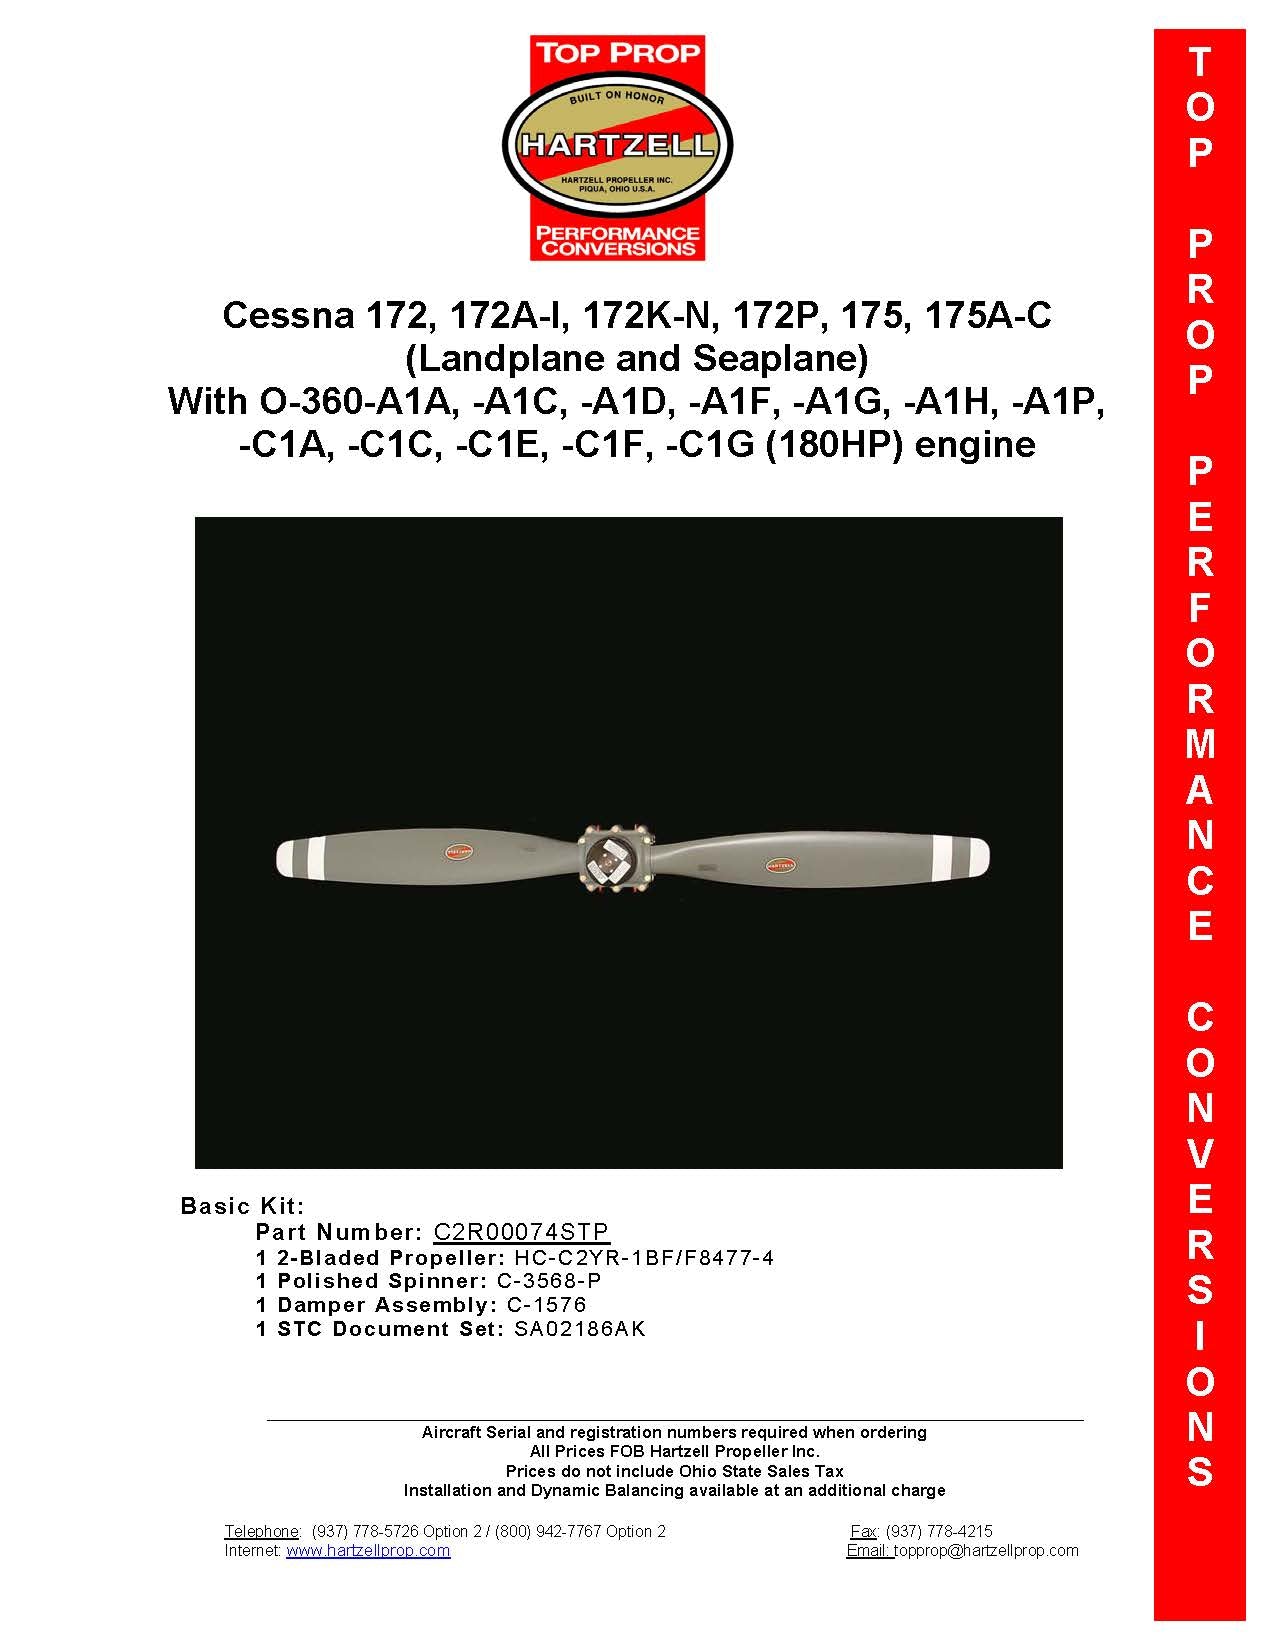 CESSNA-172-175-C2R00074STP-PAGE-1